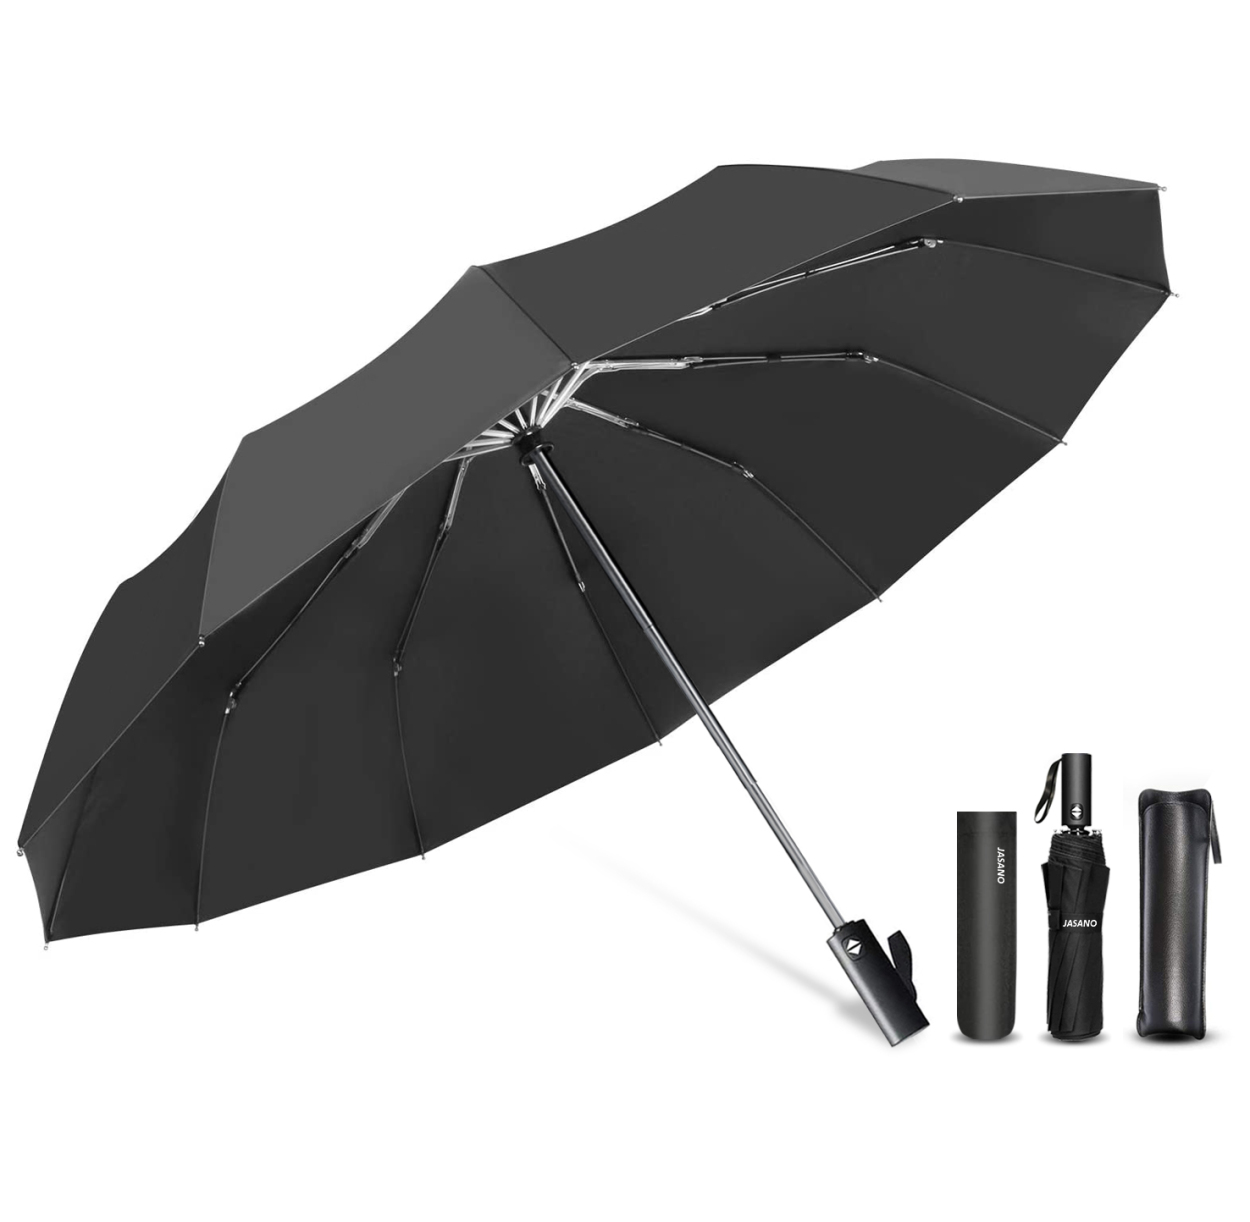 雨傘 逆折り式 折りたたみ傘 ワンタッチ 自動開閉 おりたたみ傘 軽量